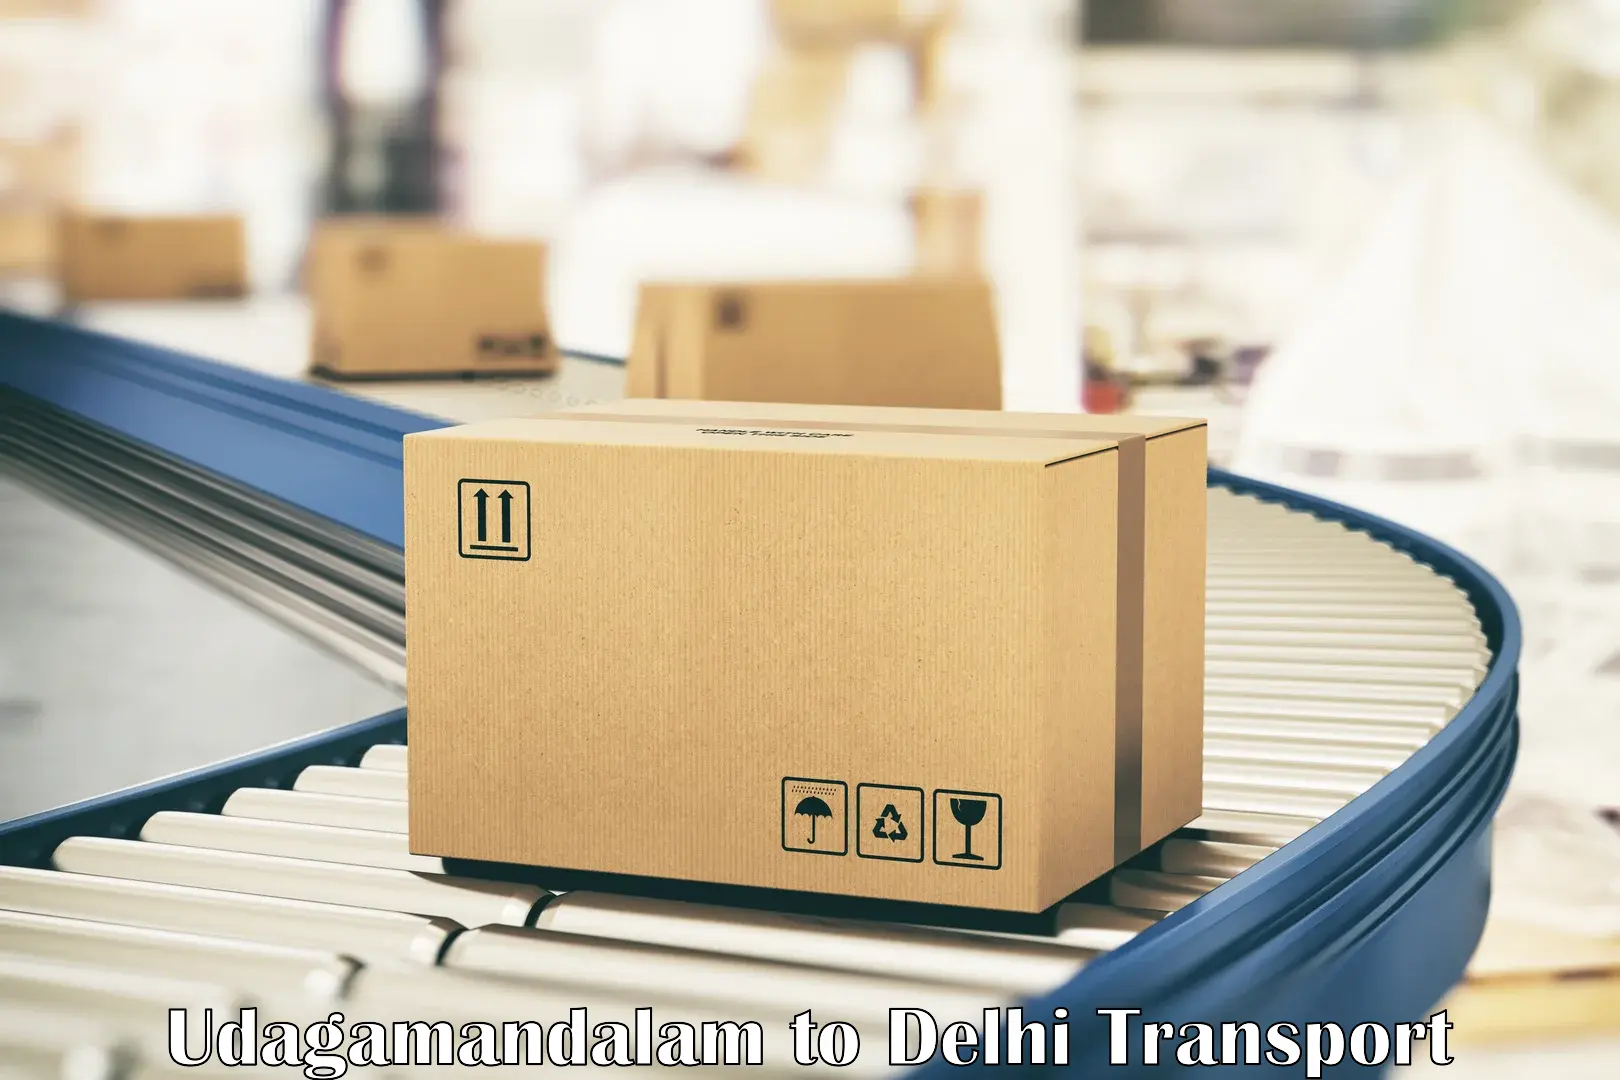 Cargo transportation services Udagamandalam to University of Delhi